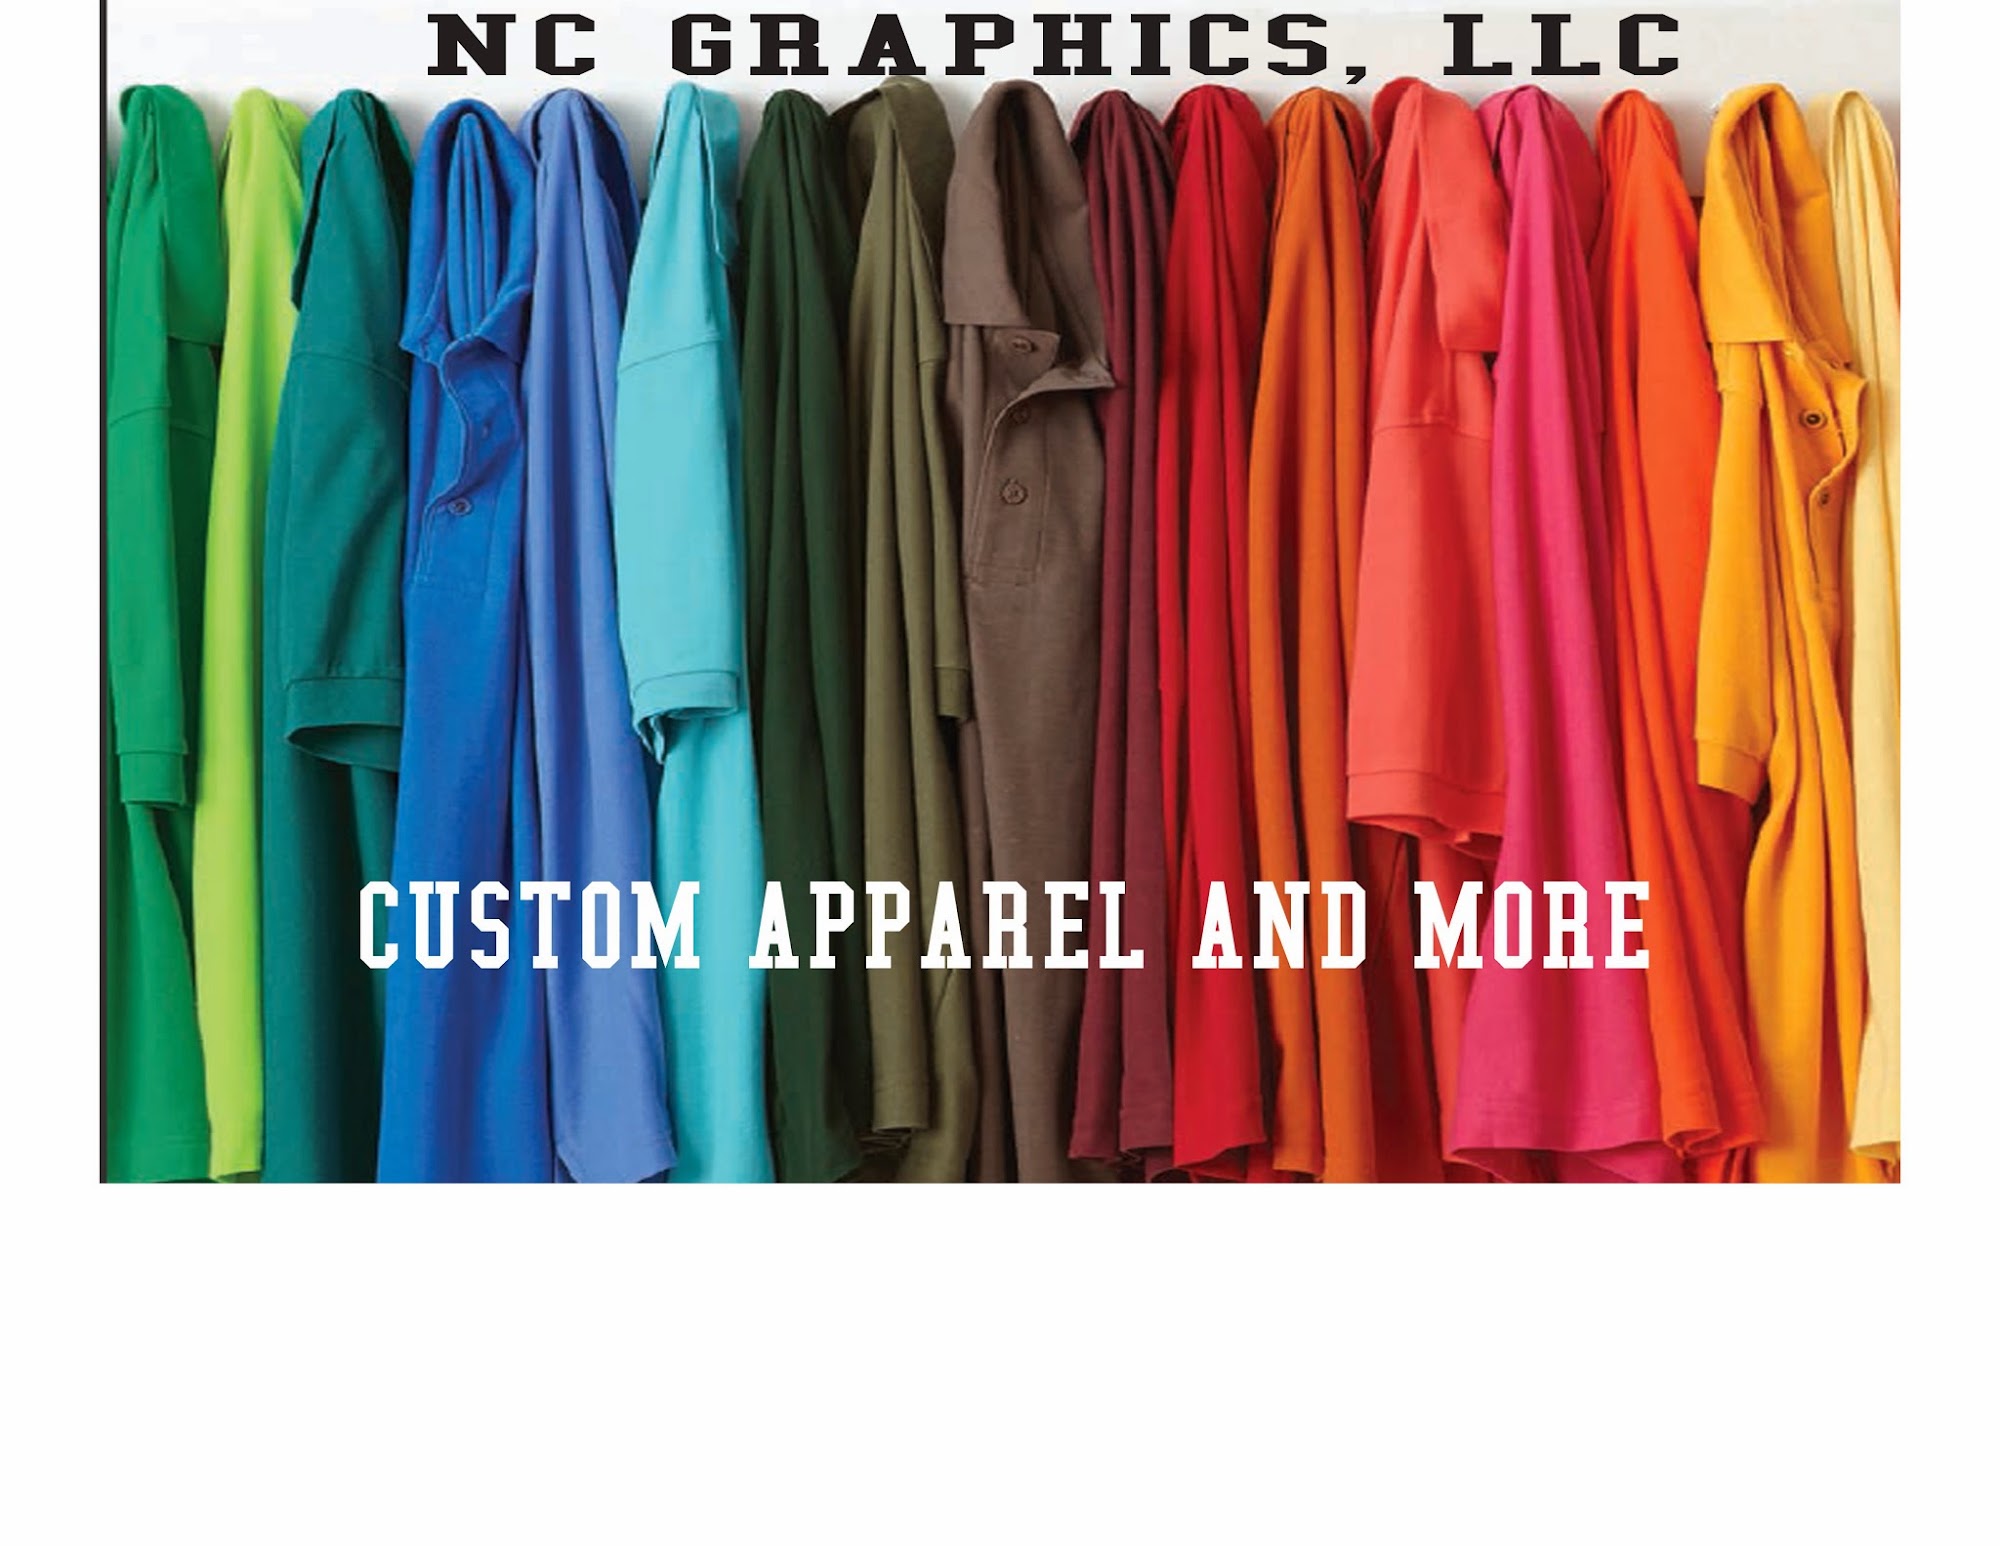 NC Graphics, LLC